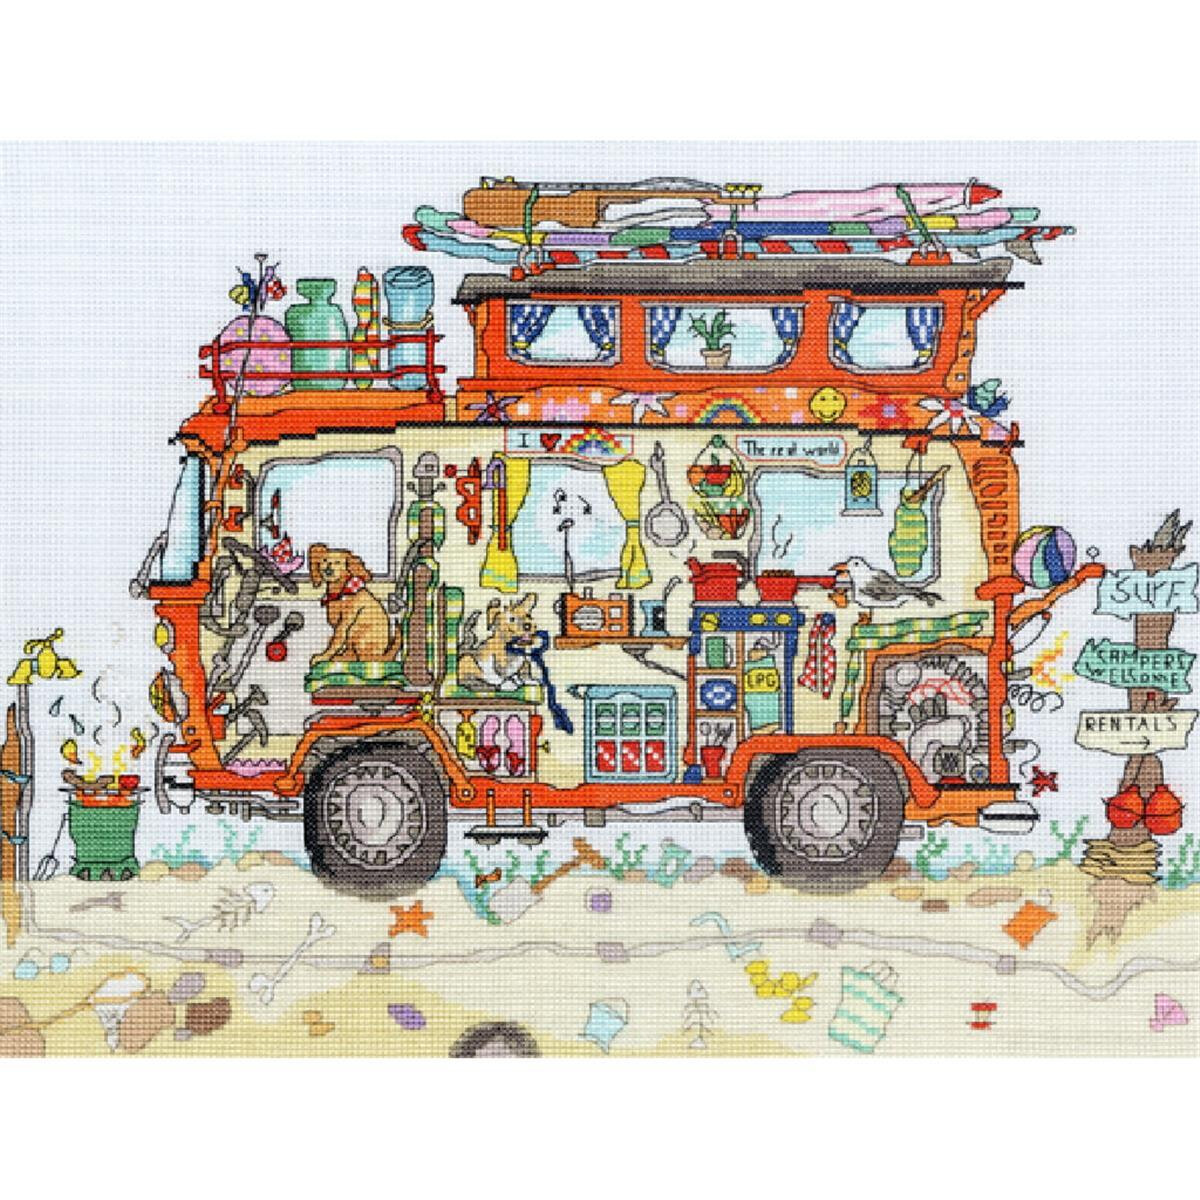 Immagine ricamata colorata e stravagante di un furgone...